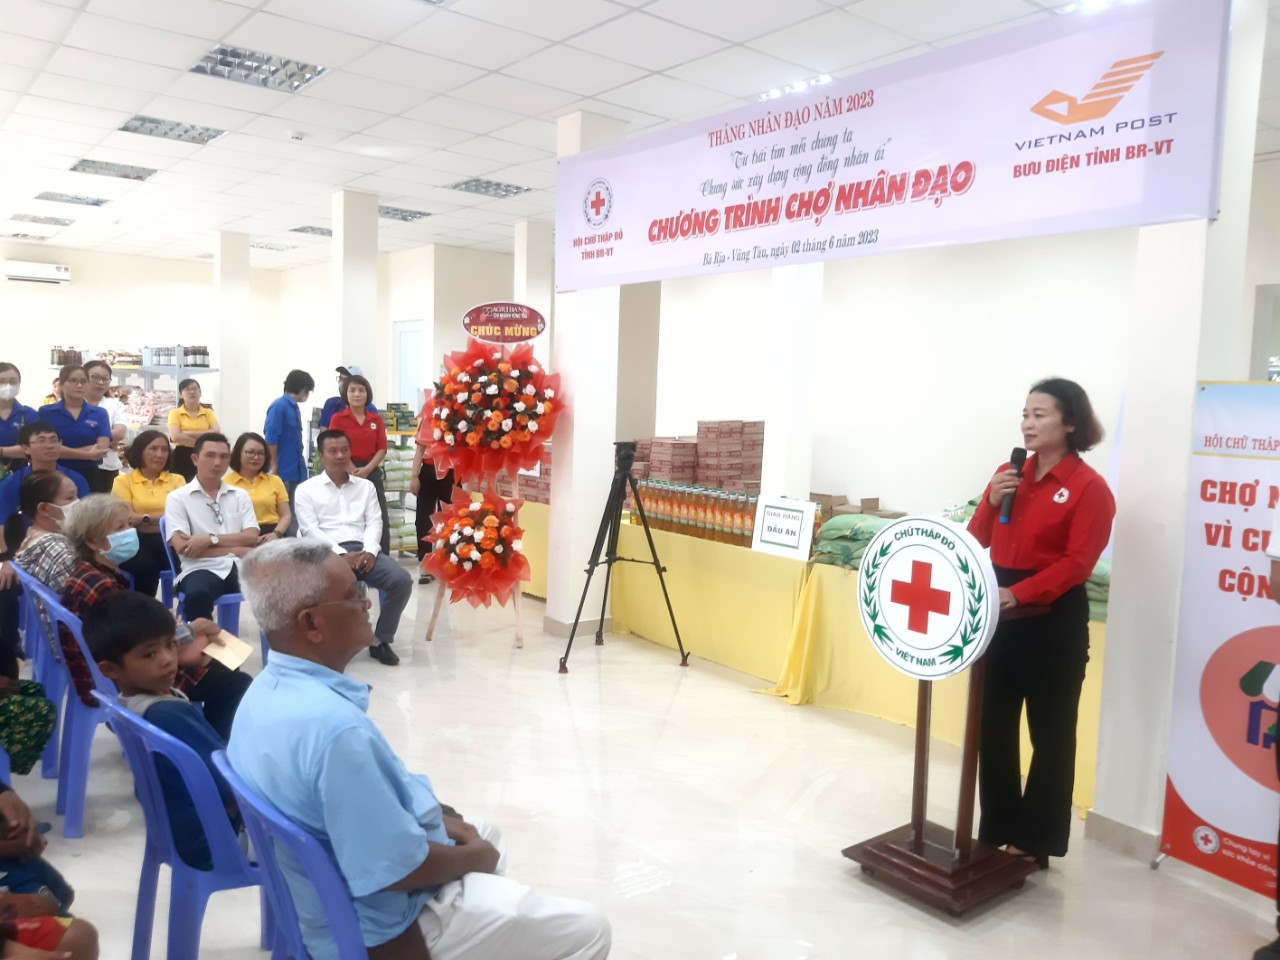 Hội Chữ thập đỏ tỉnh Bà Rịa - Vũng Tàu tổ chức “Chợ Nhân đạo” tại Bưu điện tỉnh Bà Rịa - Vũng Tàu